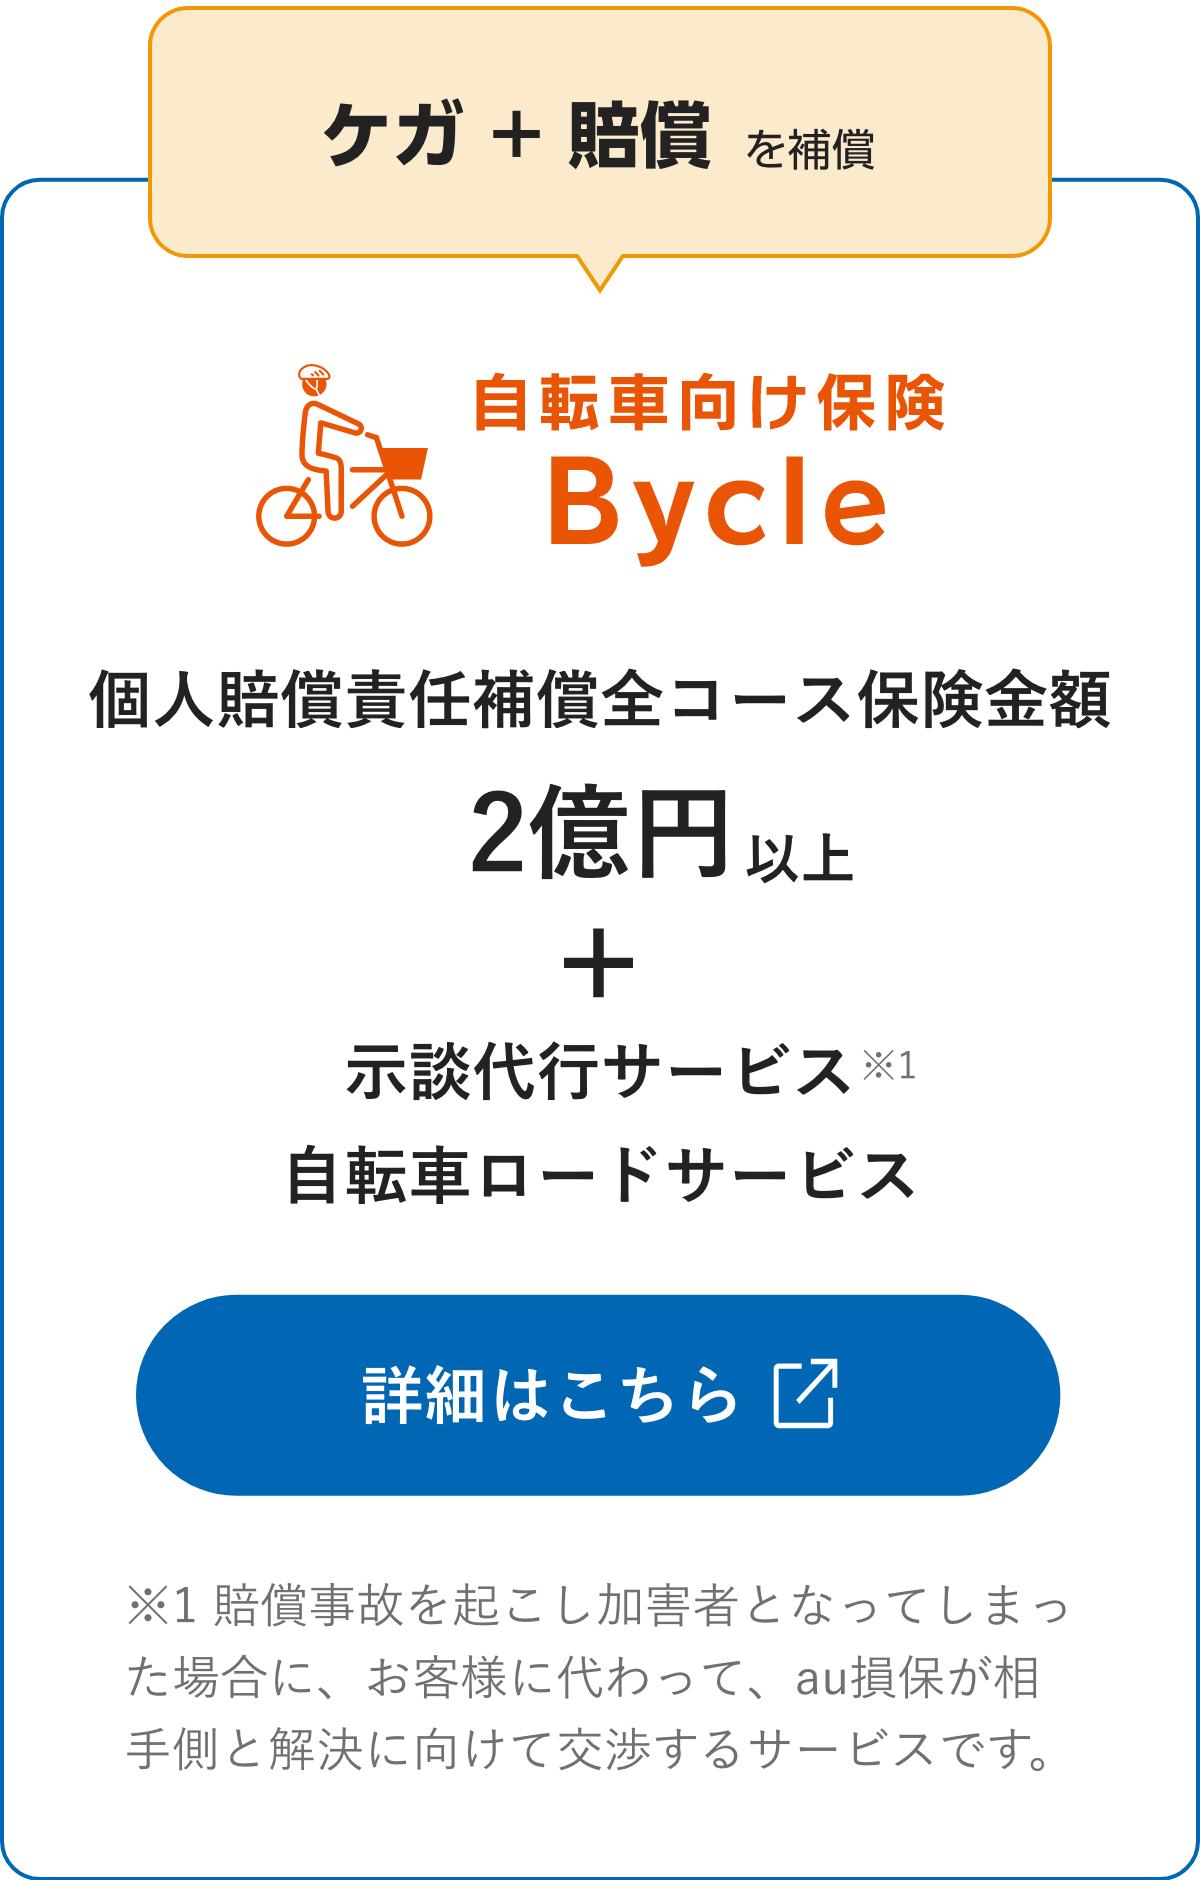 ケガ+賠償を補償 自転車向け保険「Bycle」詳細はこちら